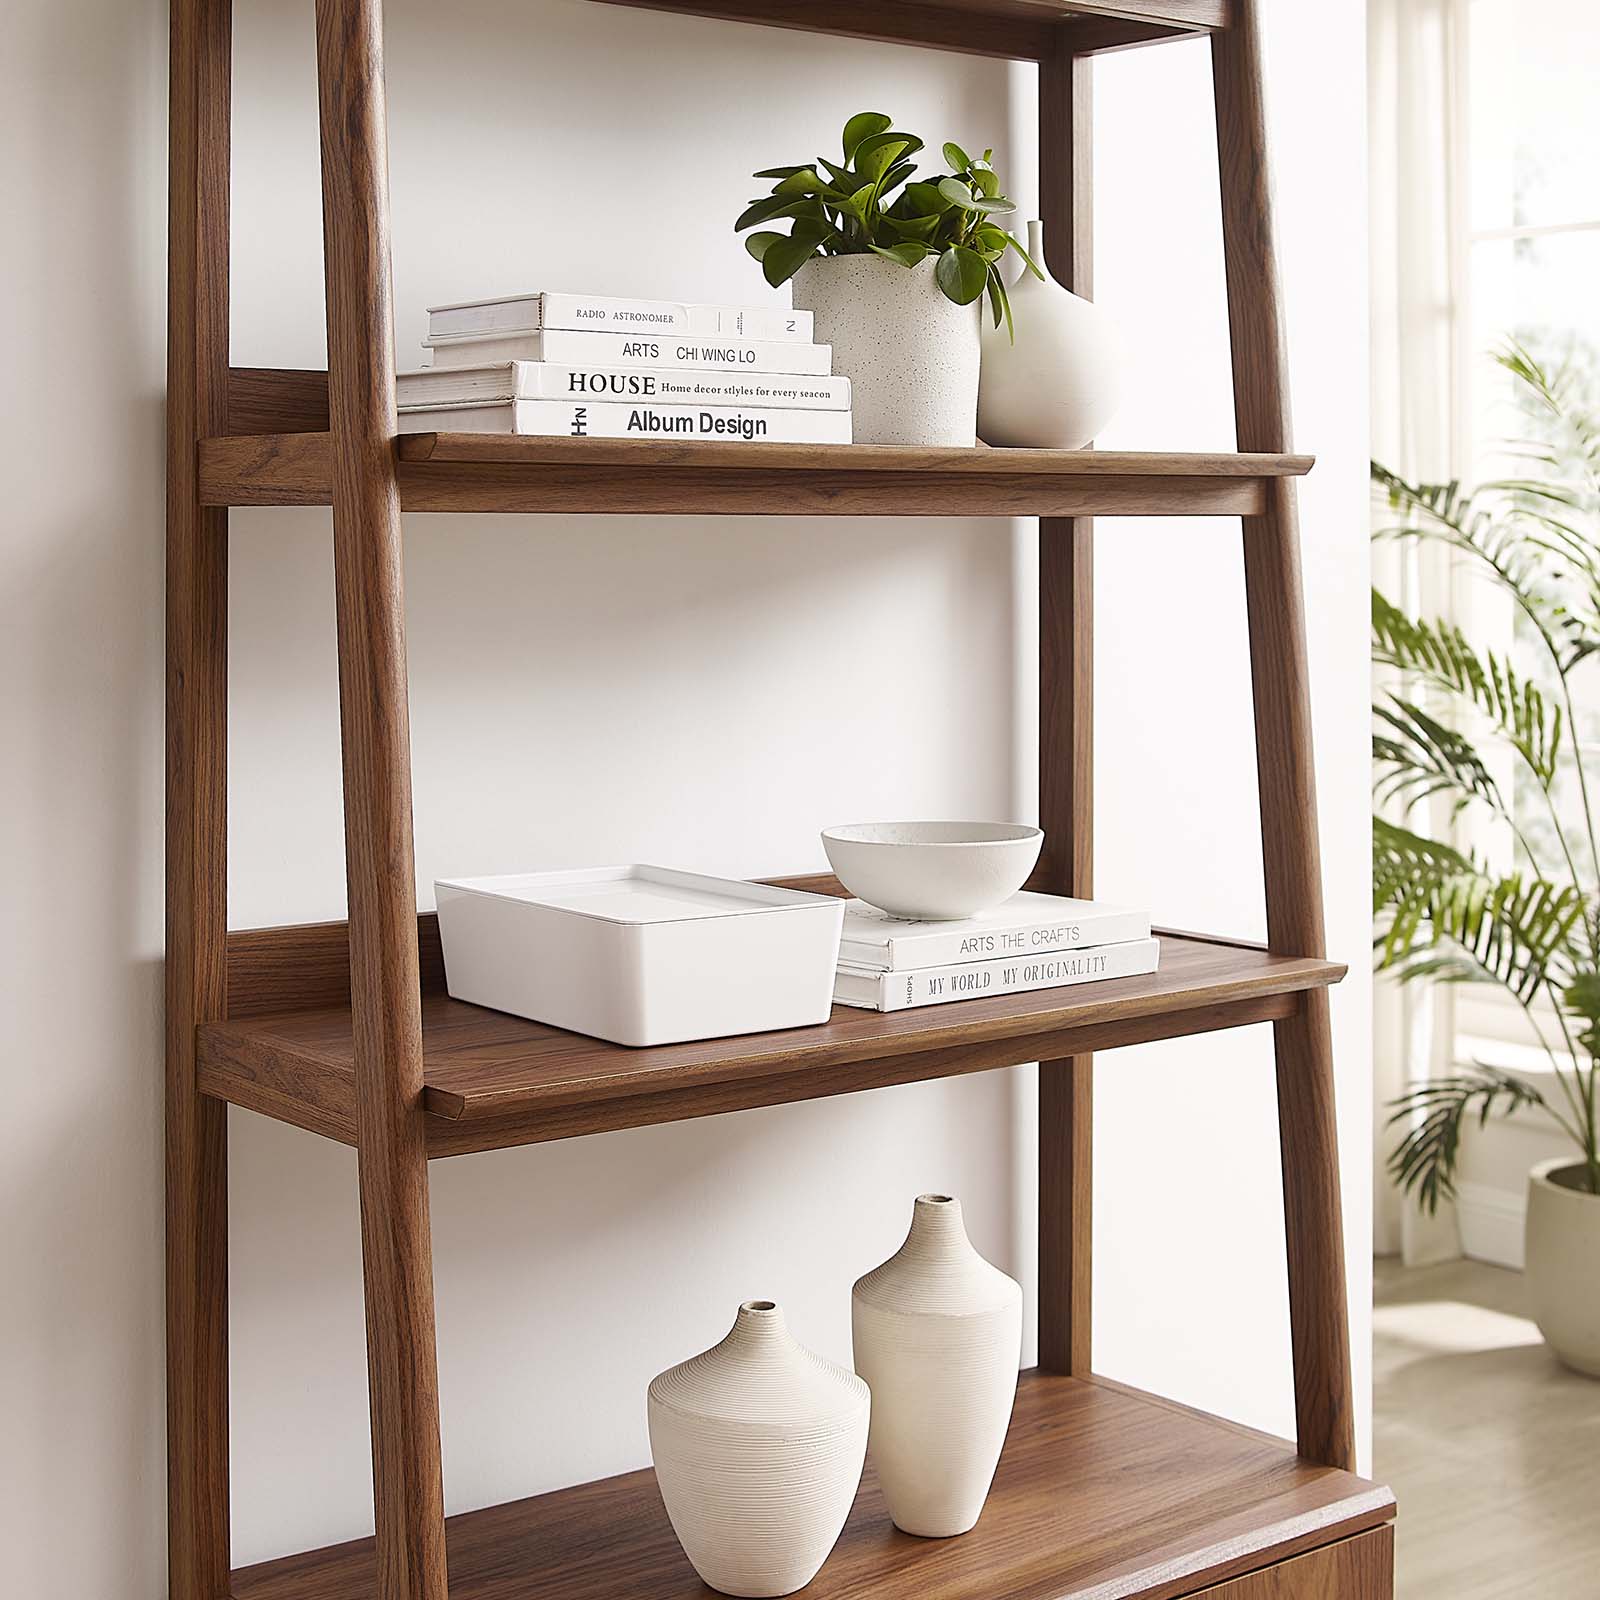 Bixby 33" Bookshelf - East Shore Modern Home Furnishings